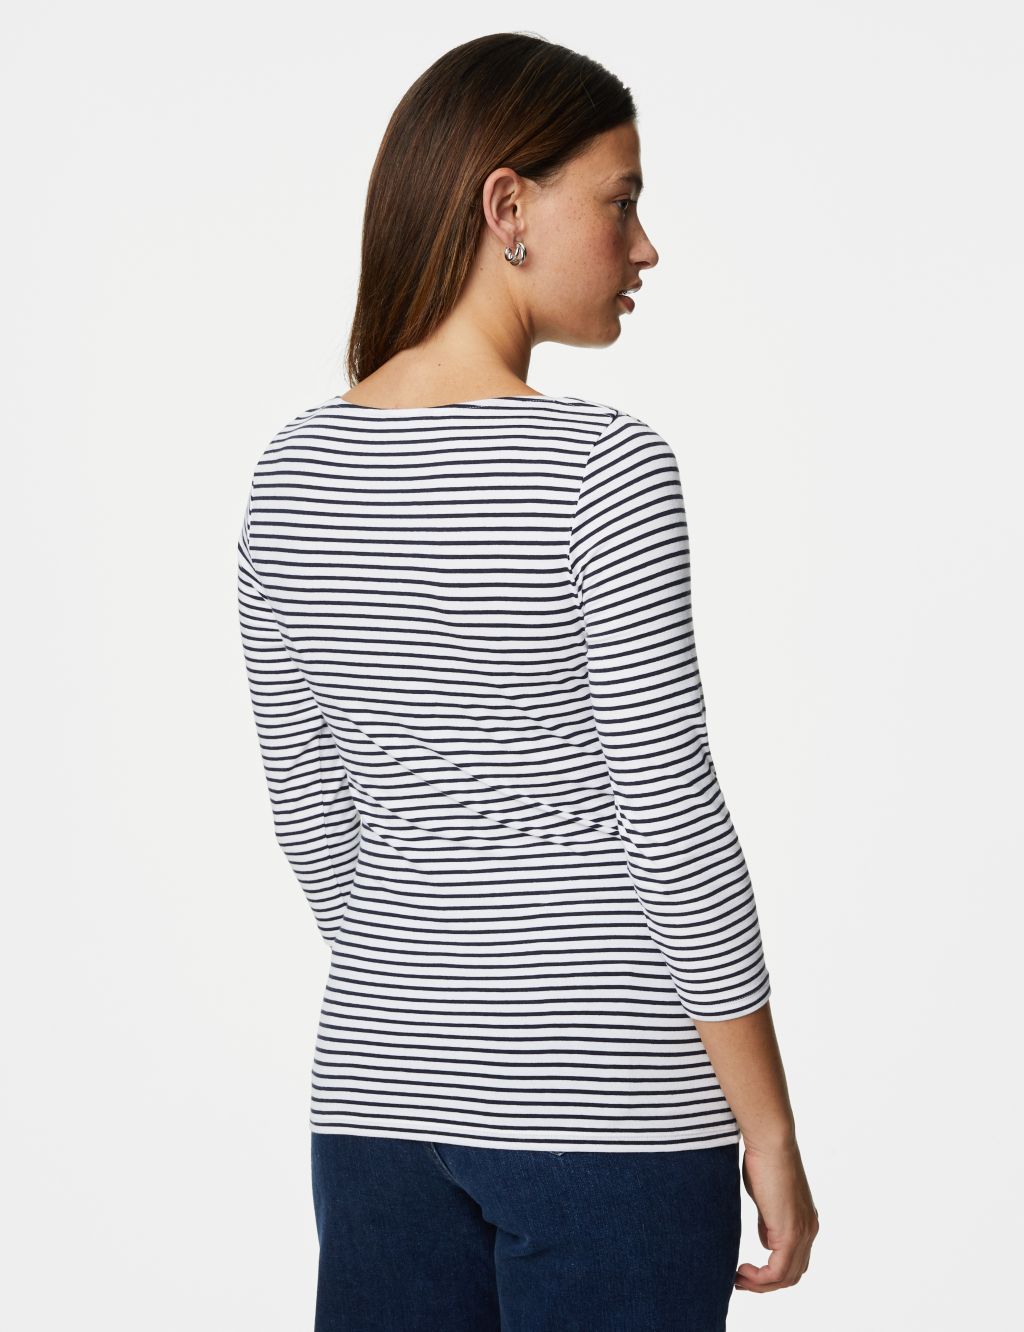 Cotton Rich Striped Slim Fit T-Shirt image 5